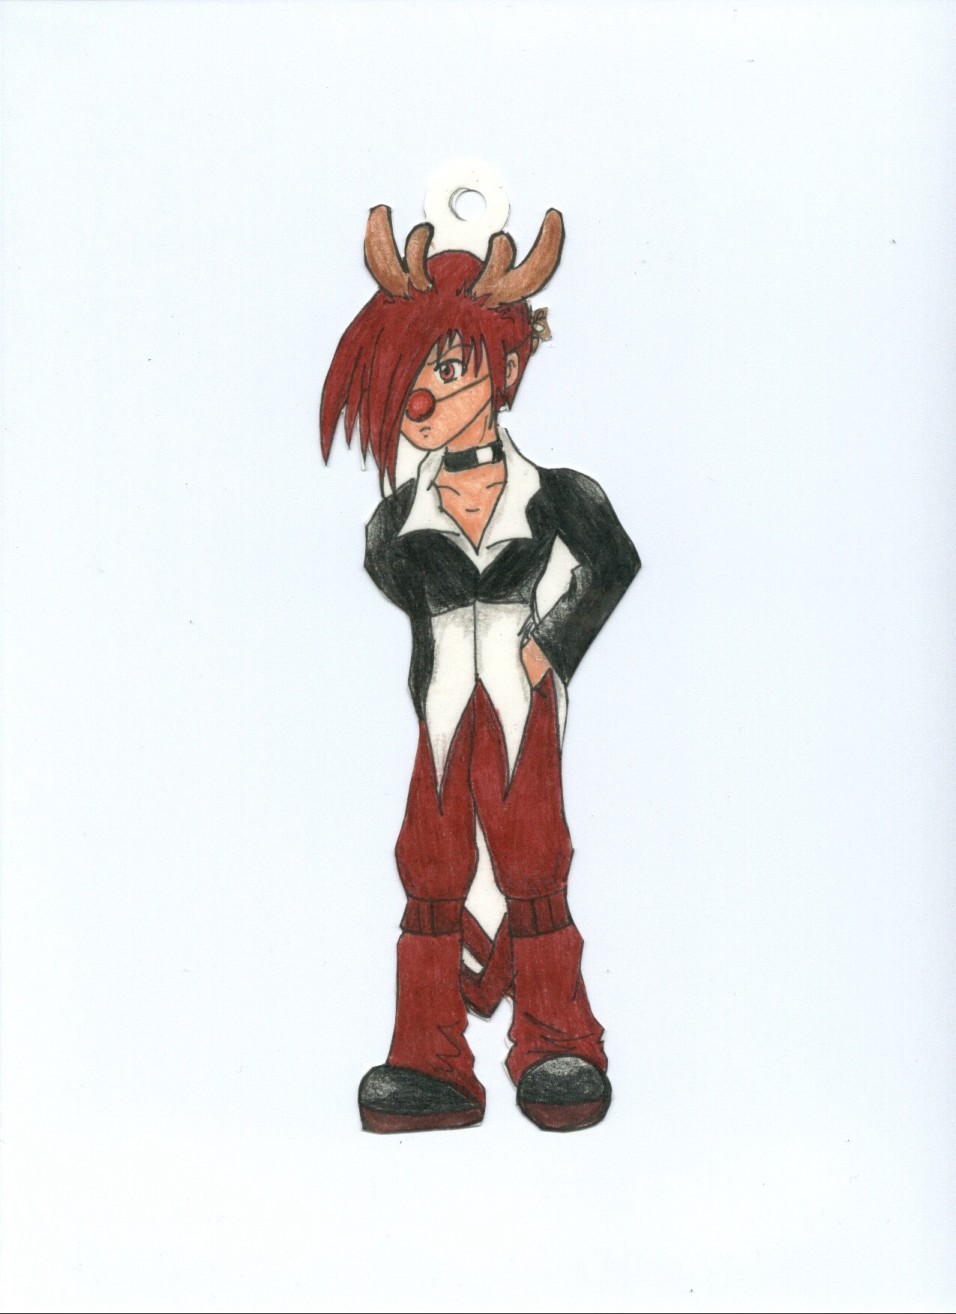 Iori as one of Santa's Reindeer by Allia